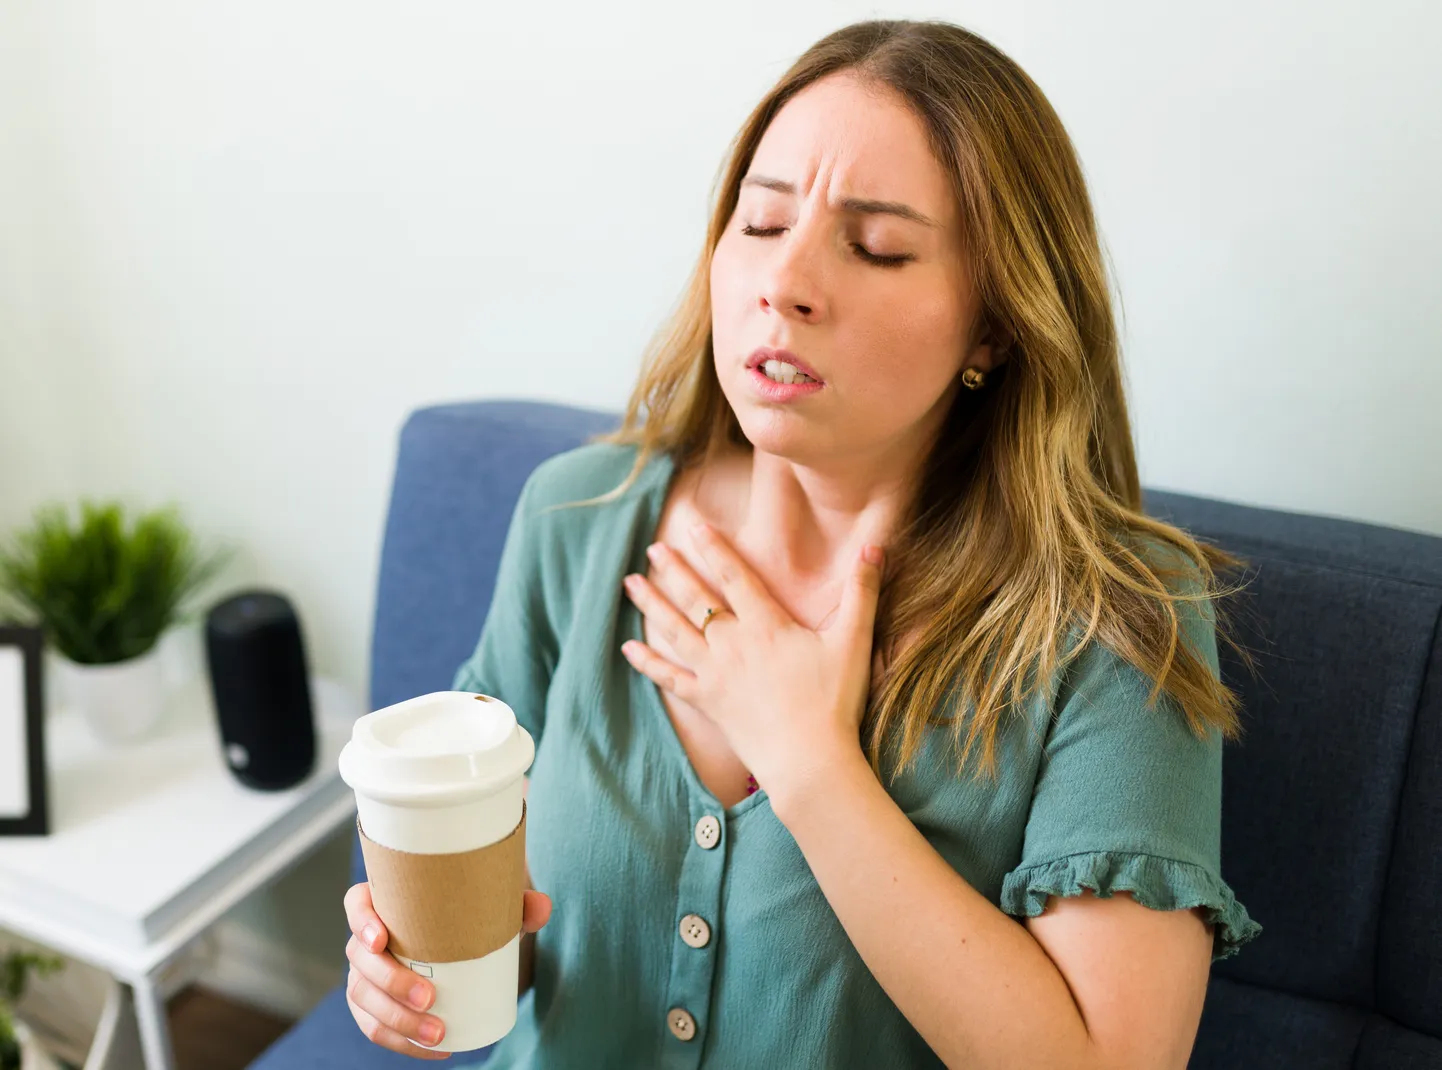 Halb suuhügieen võib panustada südame- ja kopsuhaiguste, aga ka ajuhaiguste tekkesse.